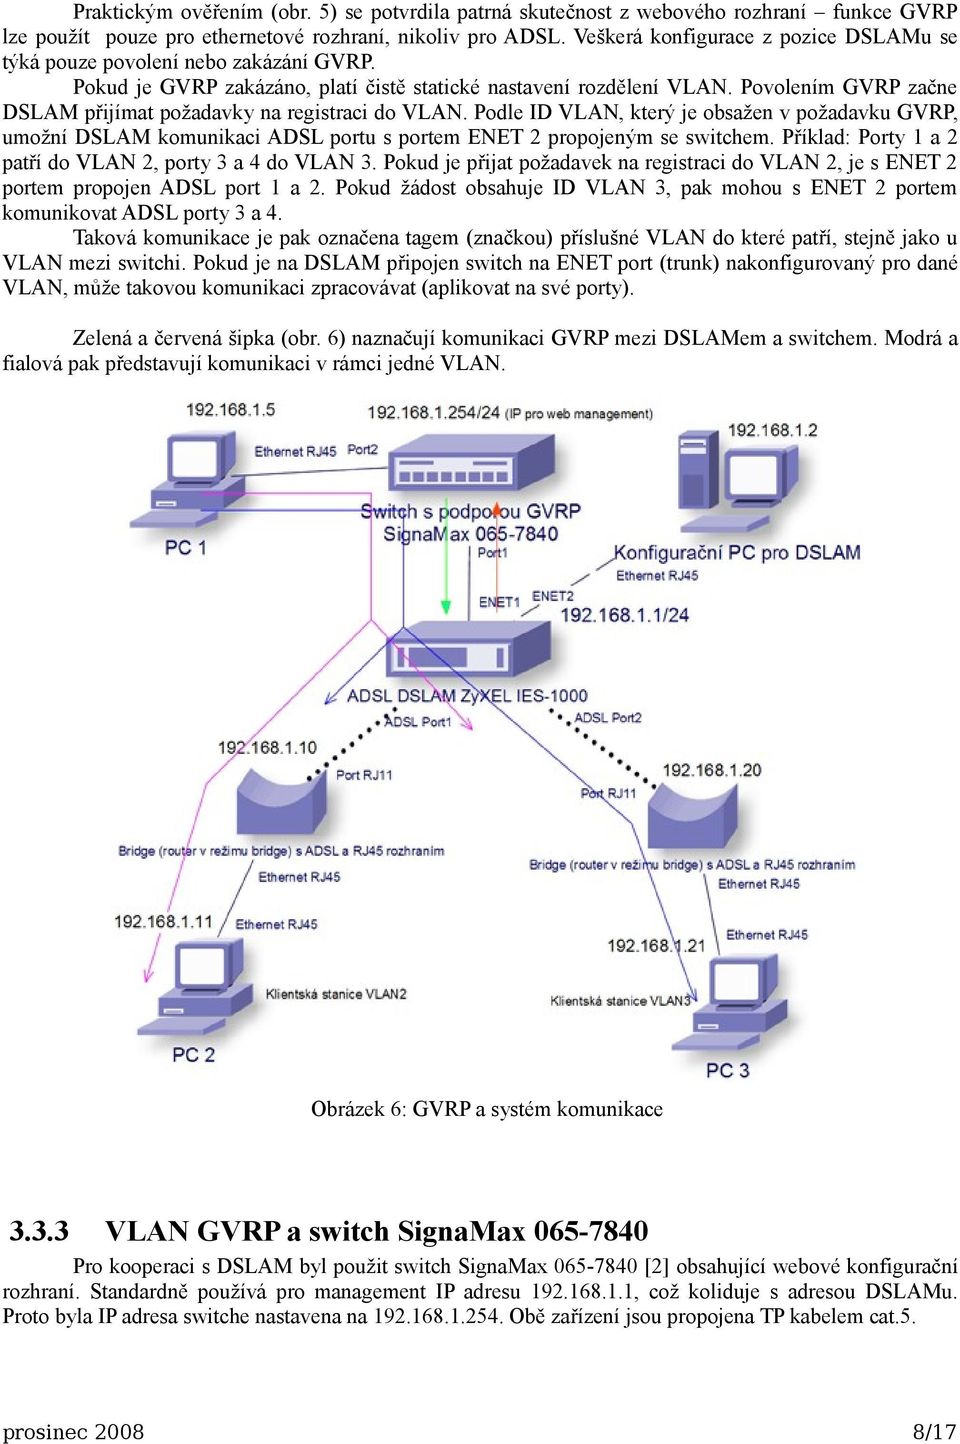 Povolením GVRP začne DSLAM přijímat požadavky na registraci do VLAN. Podle ID VLAN, který je obsažen v požadavku GVRP, umožní DSLAM komunikaci ADSL portu s portem ENET 2 propojeným se switchem.